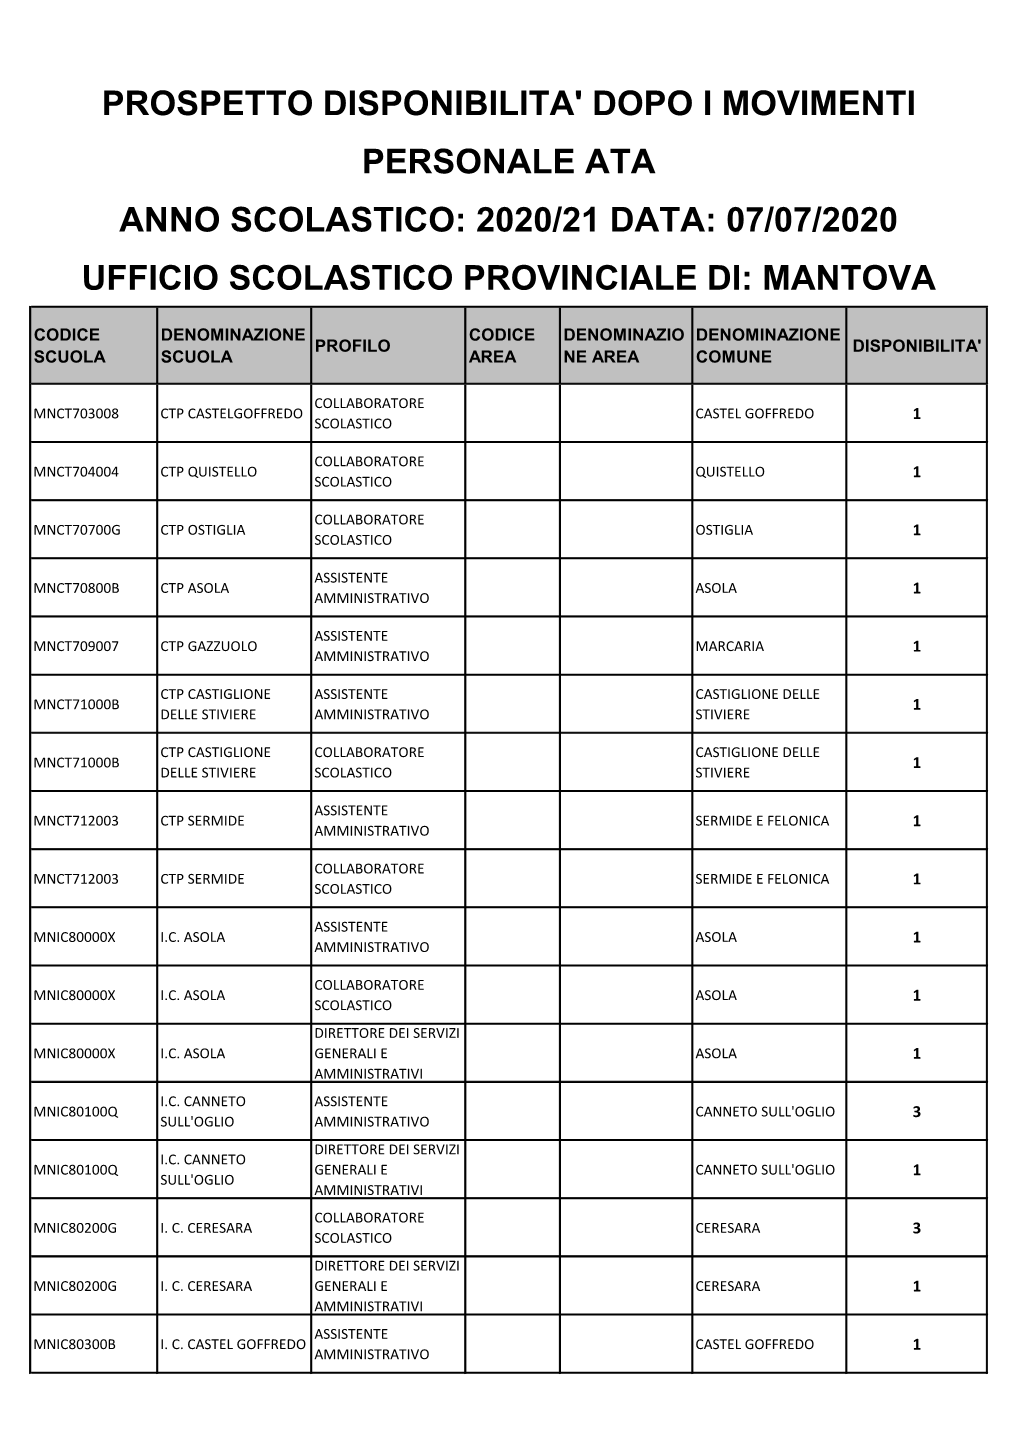 Prospetto Disponibilita' Dopo I Movimenti Personale Ata Anno Scolastico: 2020/21 Data: 07/07/2020 Ufficio Scolastico Provinciale Di: Mantova